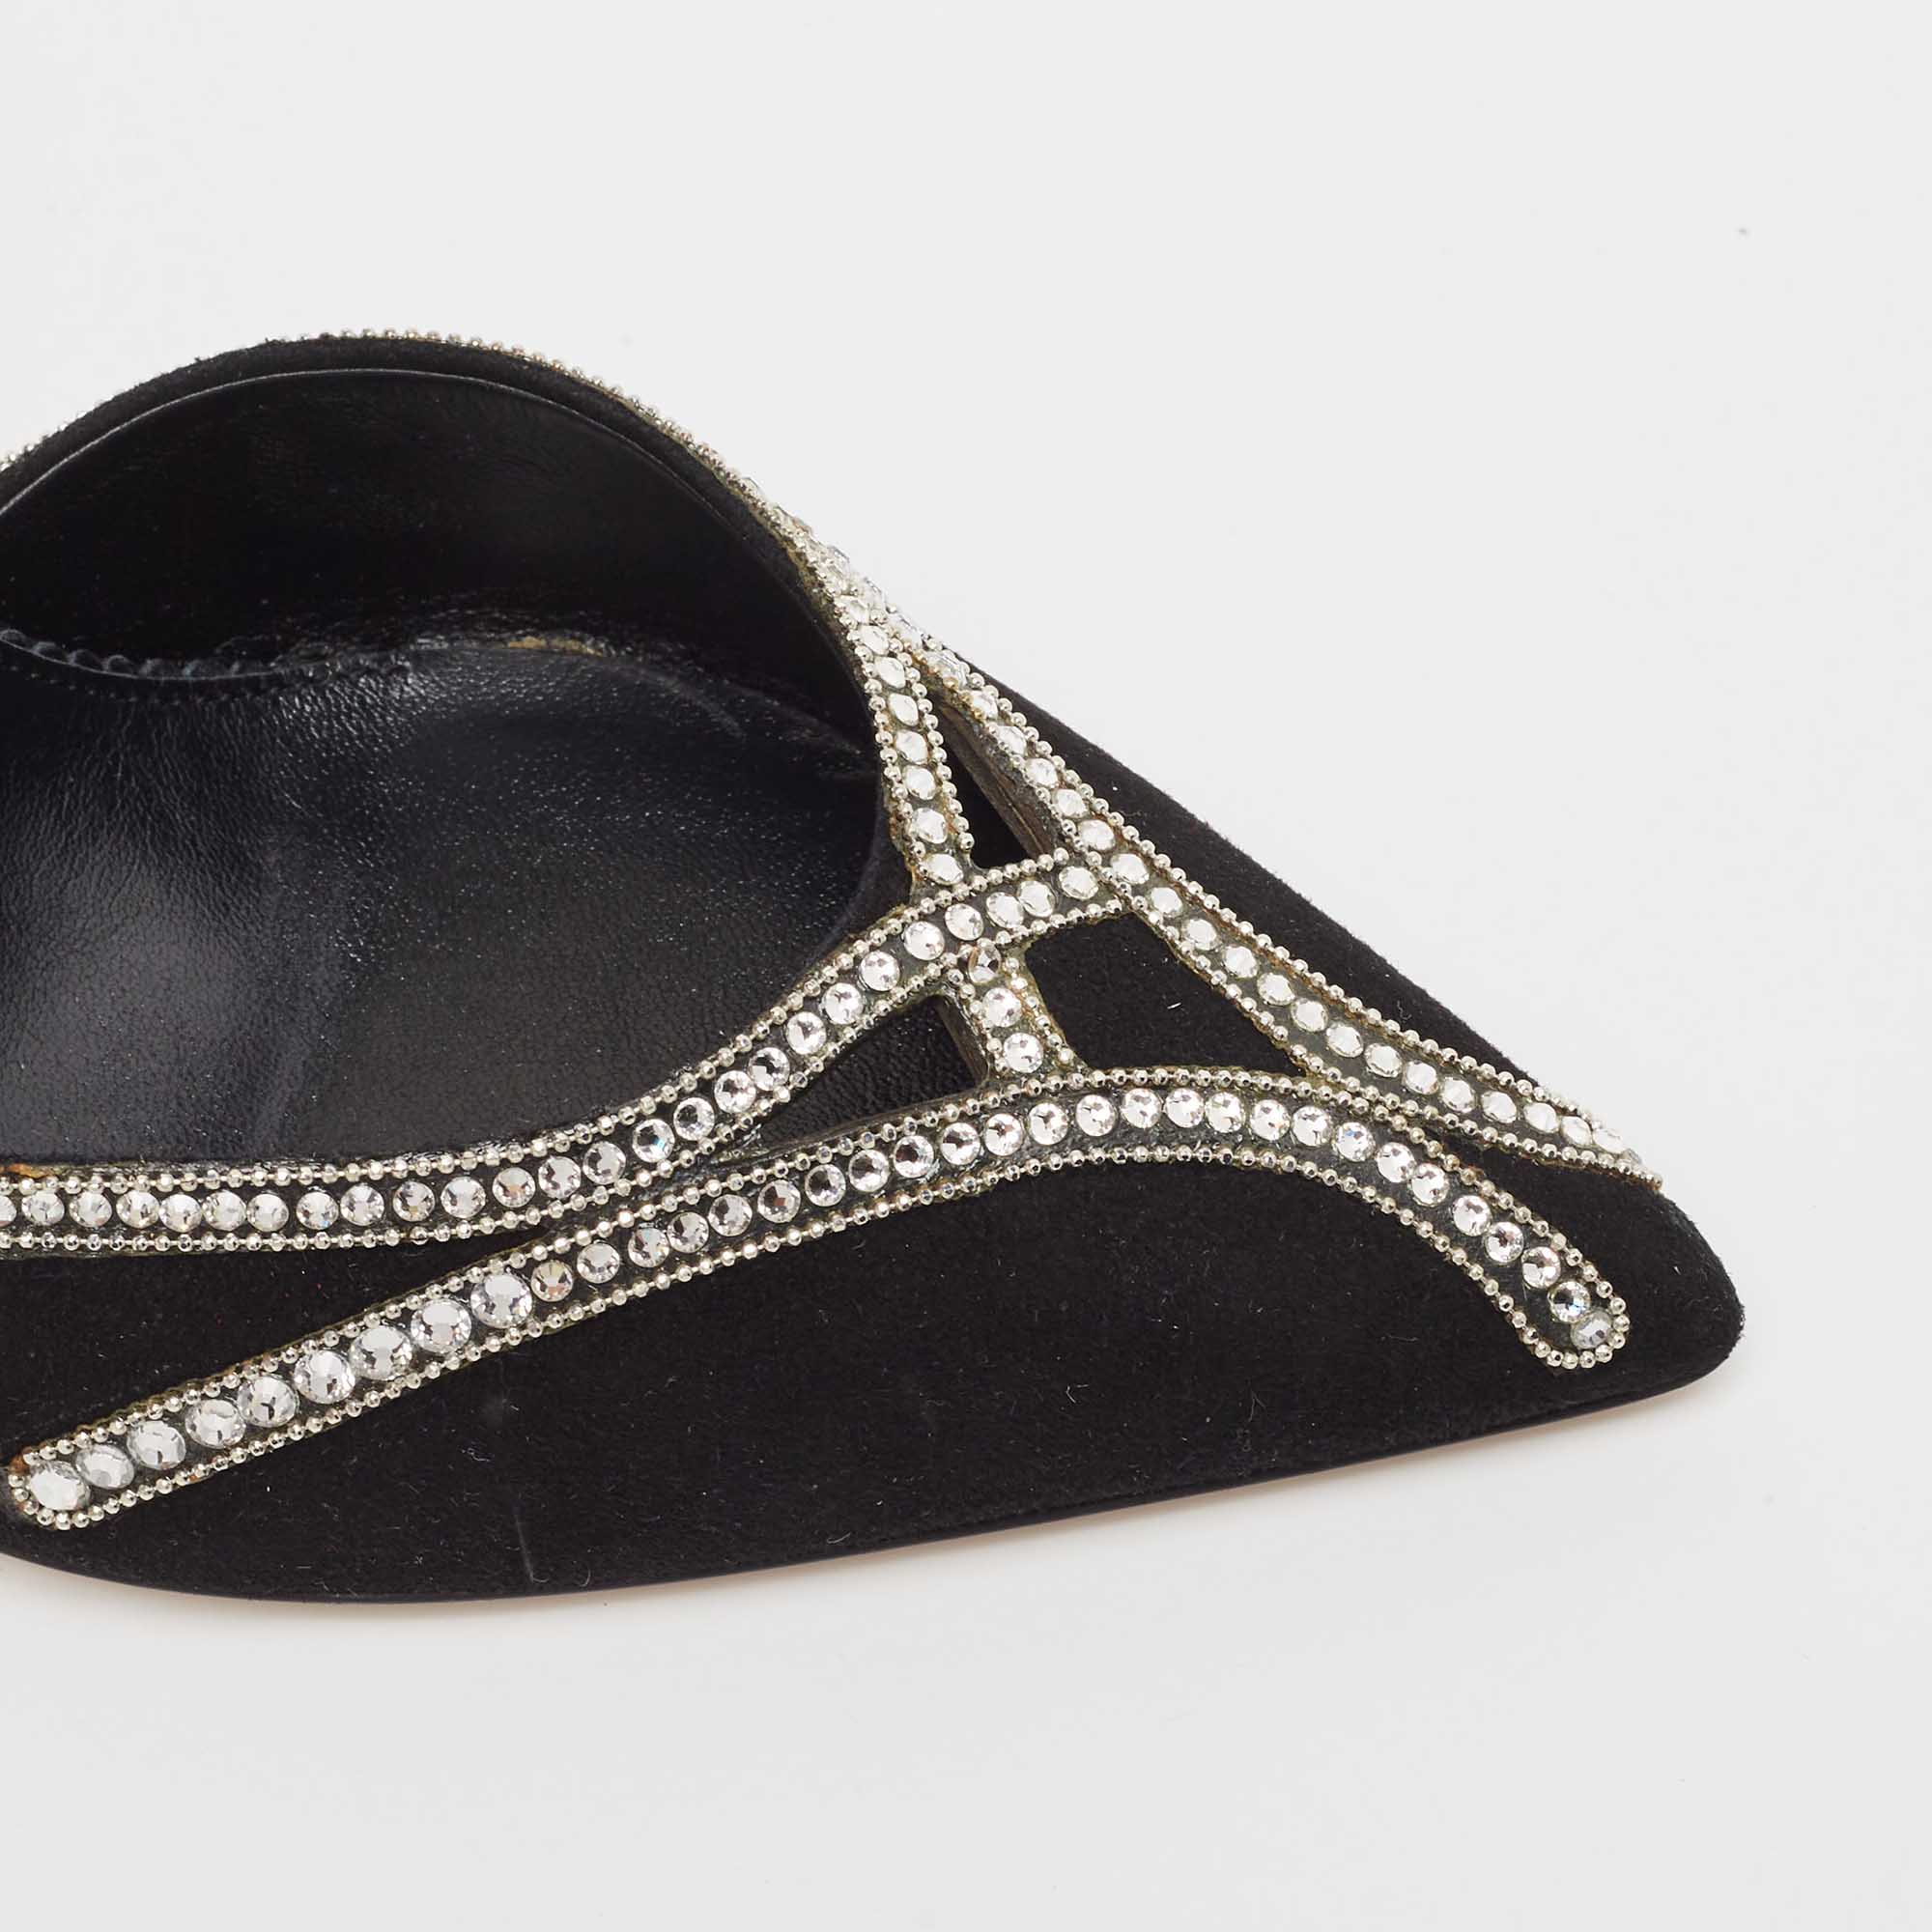 Le Silla Black Suede Crystal Embellished Ankle Strap Pumps Size 38.5